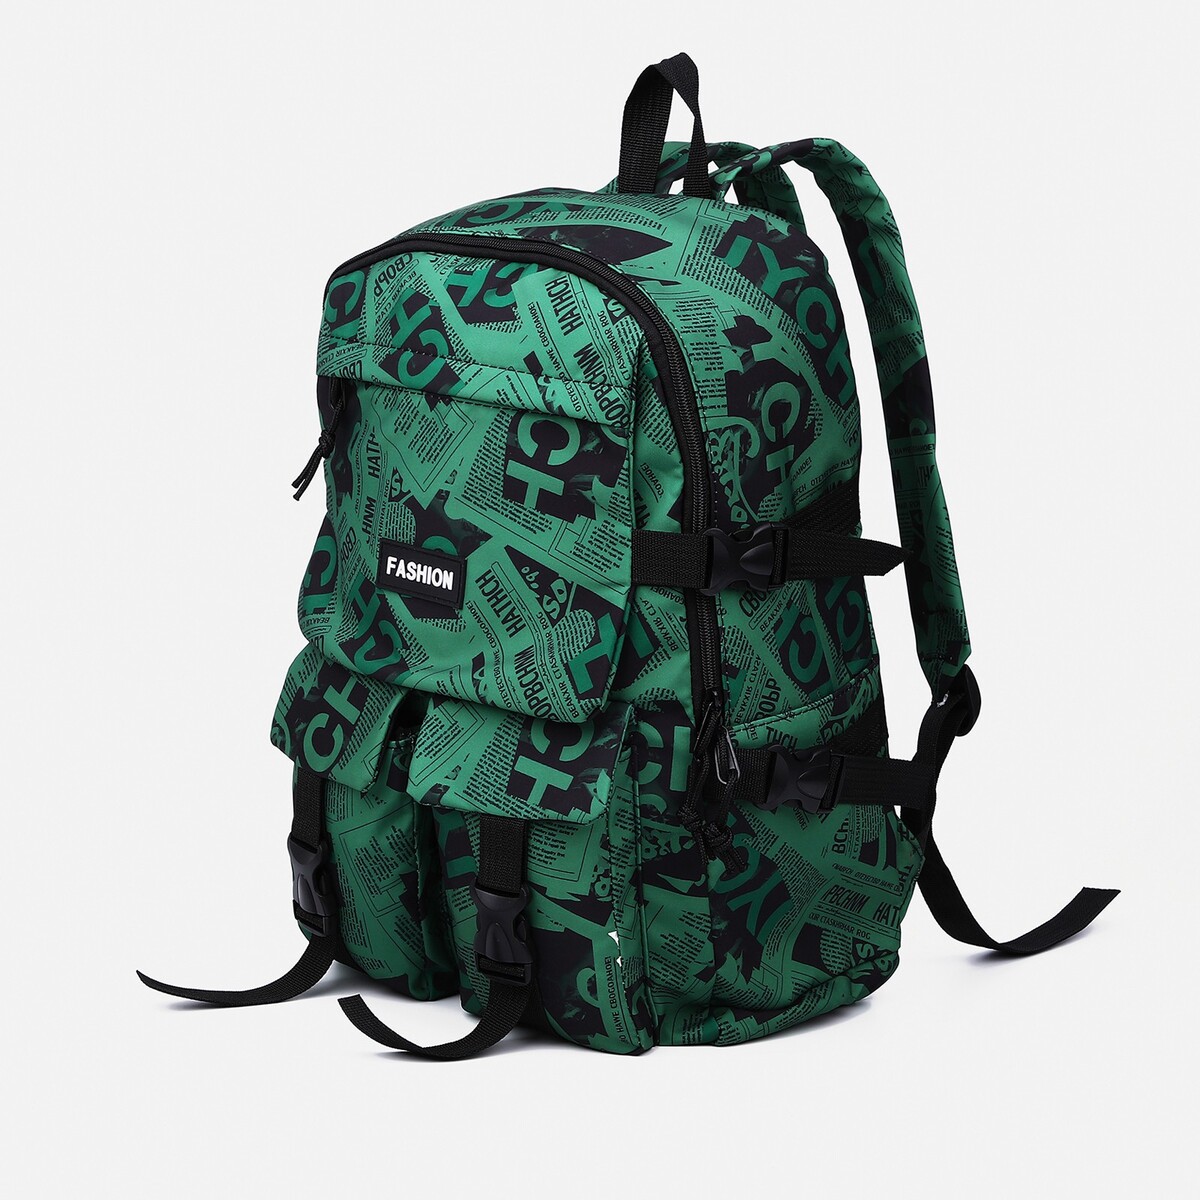 Рюкзак молодежный из текстиля на молнии, 3 кармана, цвет зеленый